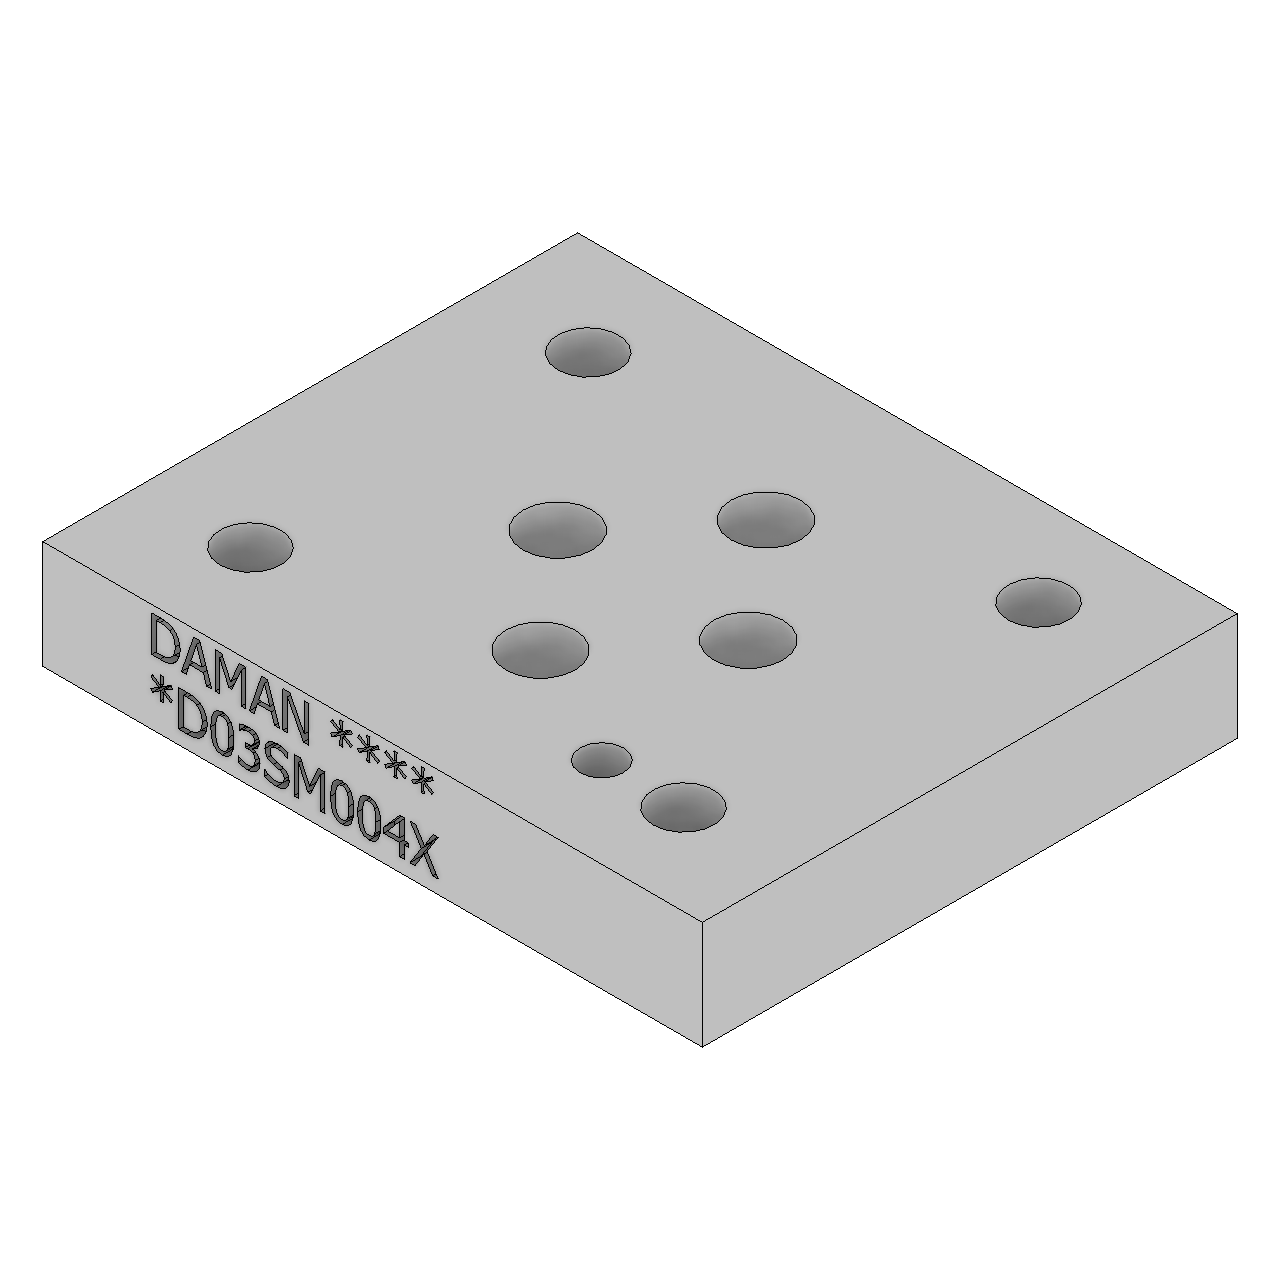 DD03SM004X - Sandwich Modules